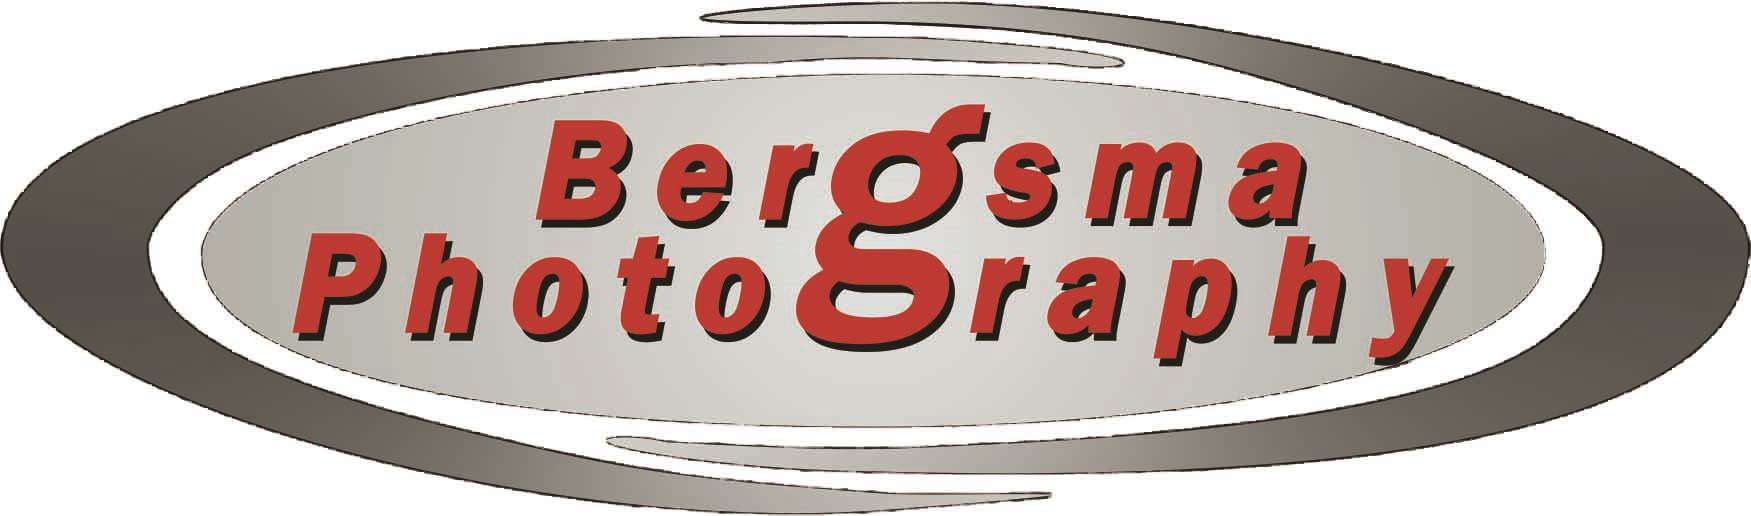 Bergsma-fotografie-steenwijk-foto-cursus-online